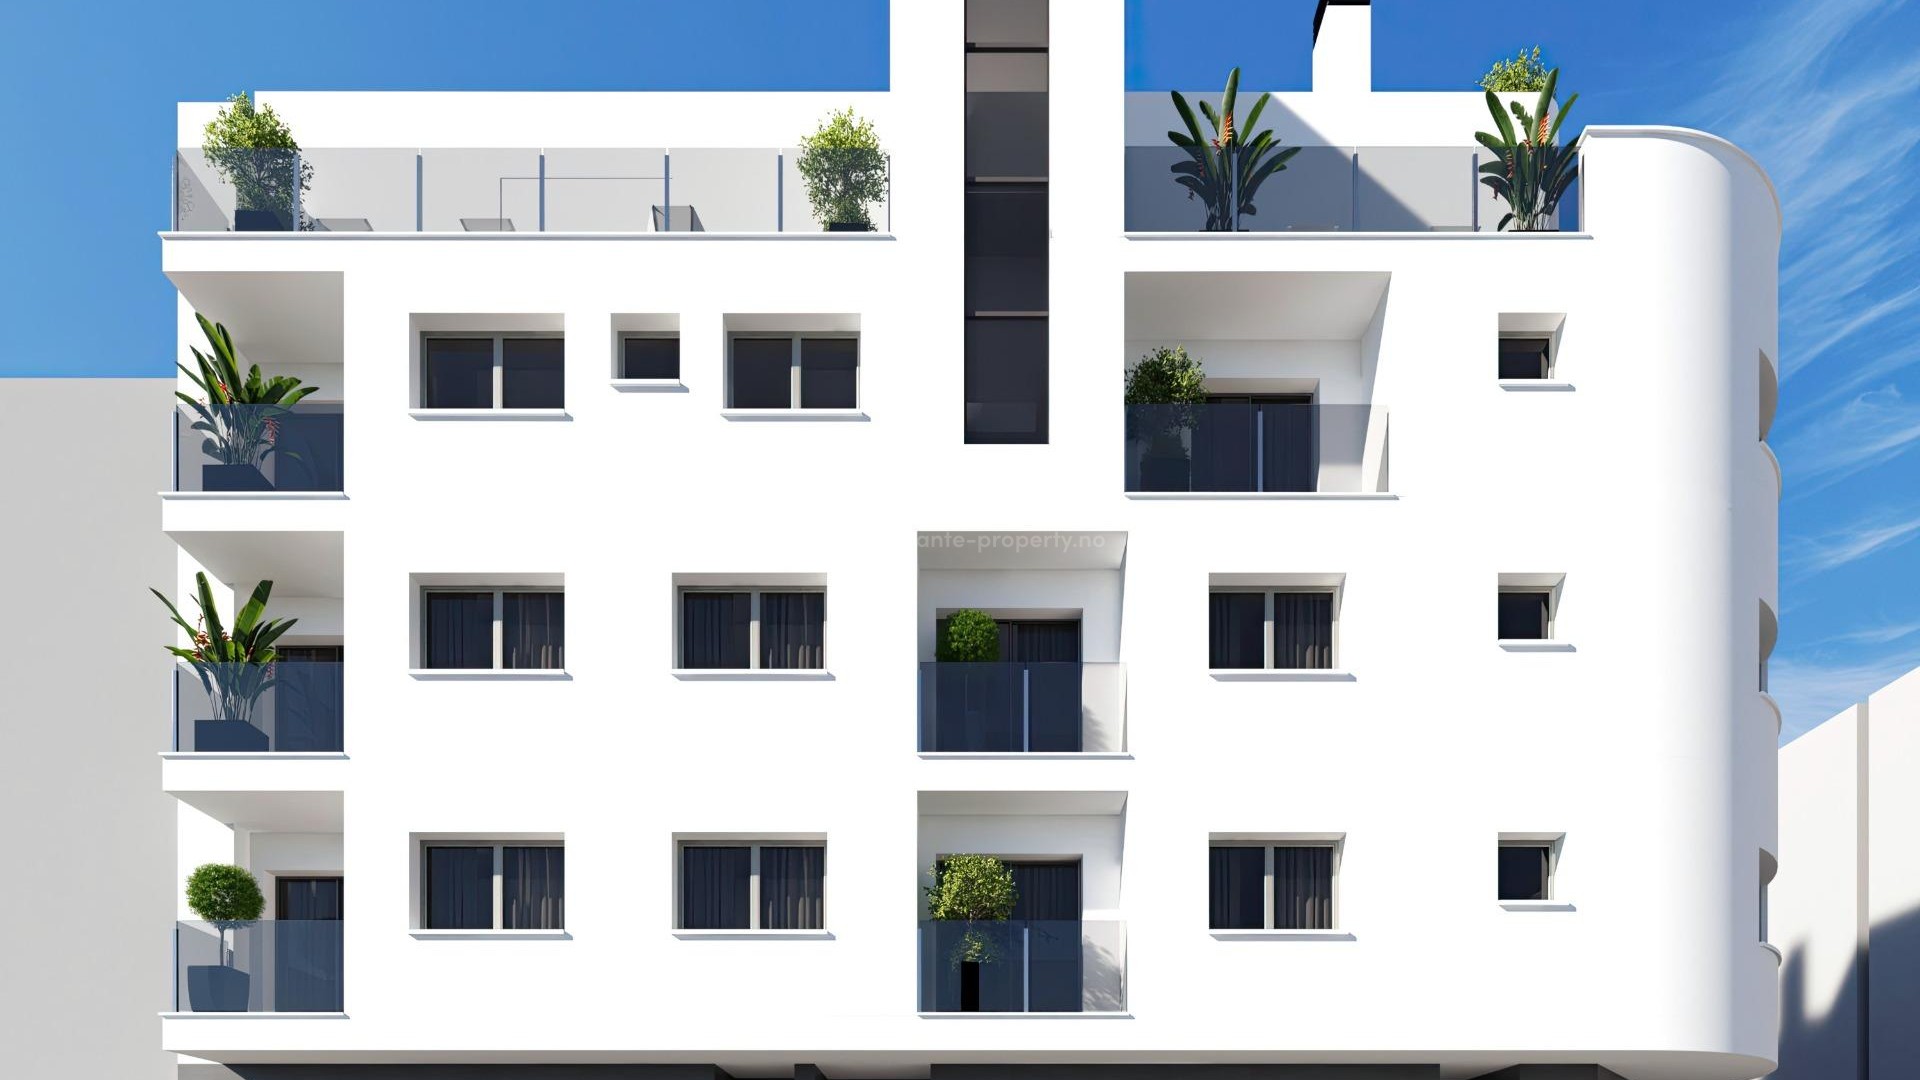 Nye leiligheter i Torrevieja i Alicante-provinsen ,1 og 2 sov, 1 og 2 bad, vakkert felles solarium, toppleiligheter. Nær strender og infrastruktur.